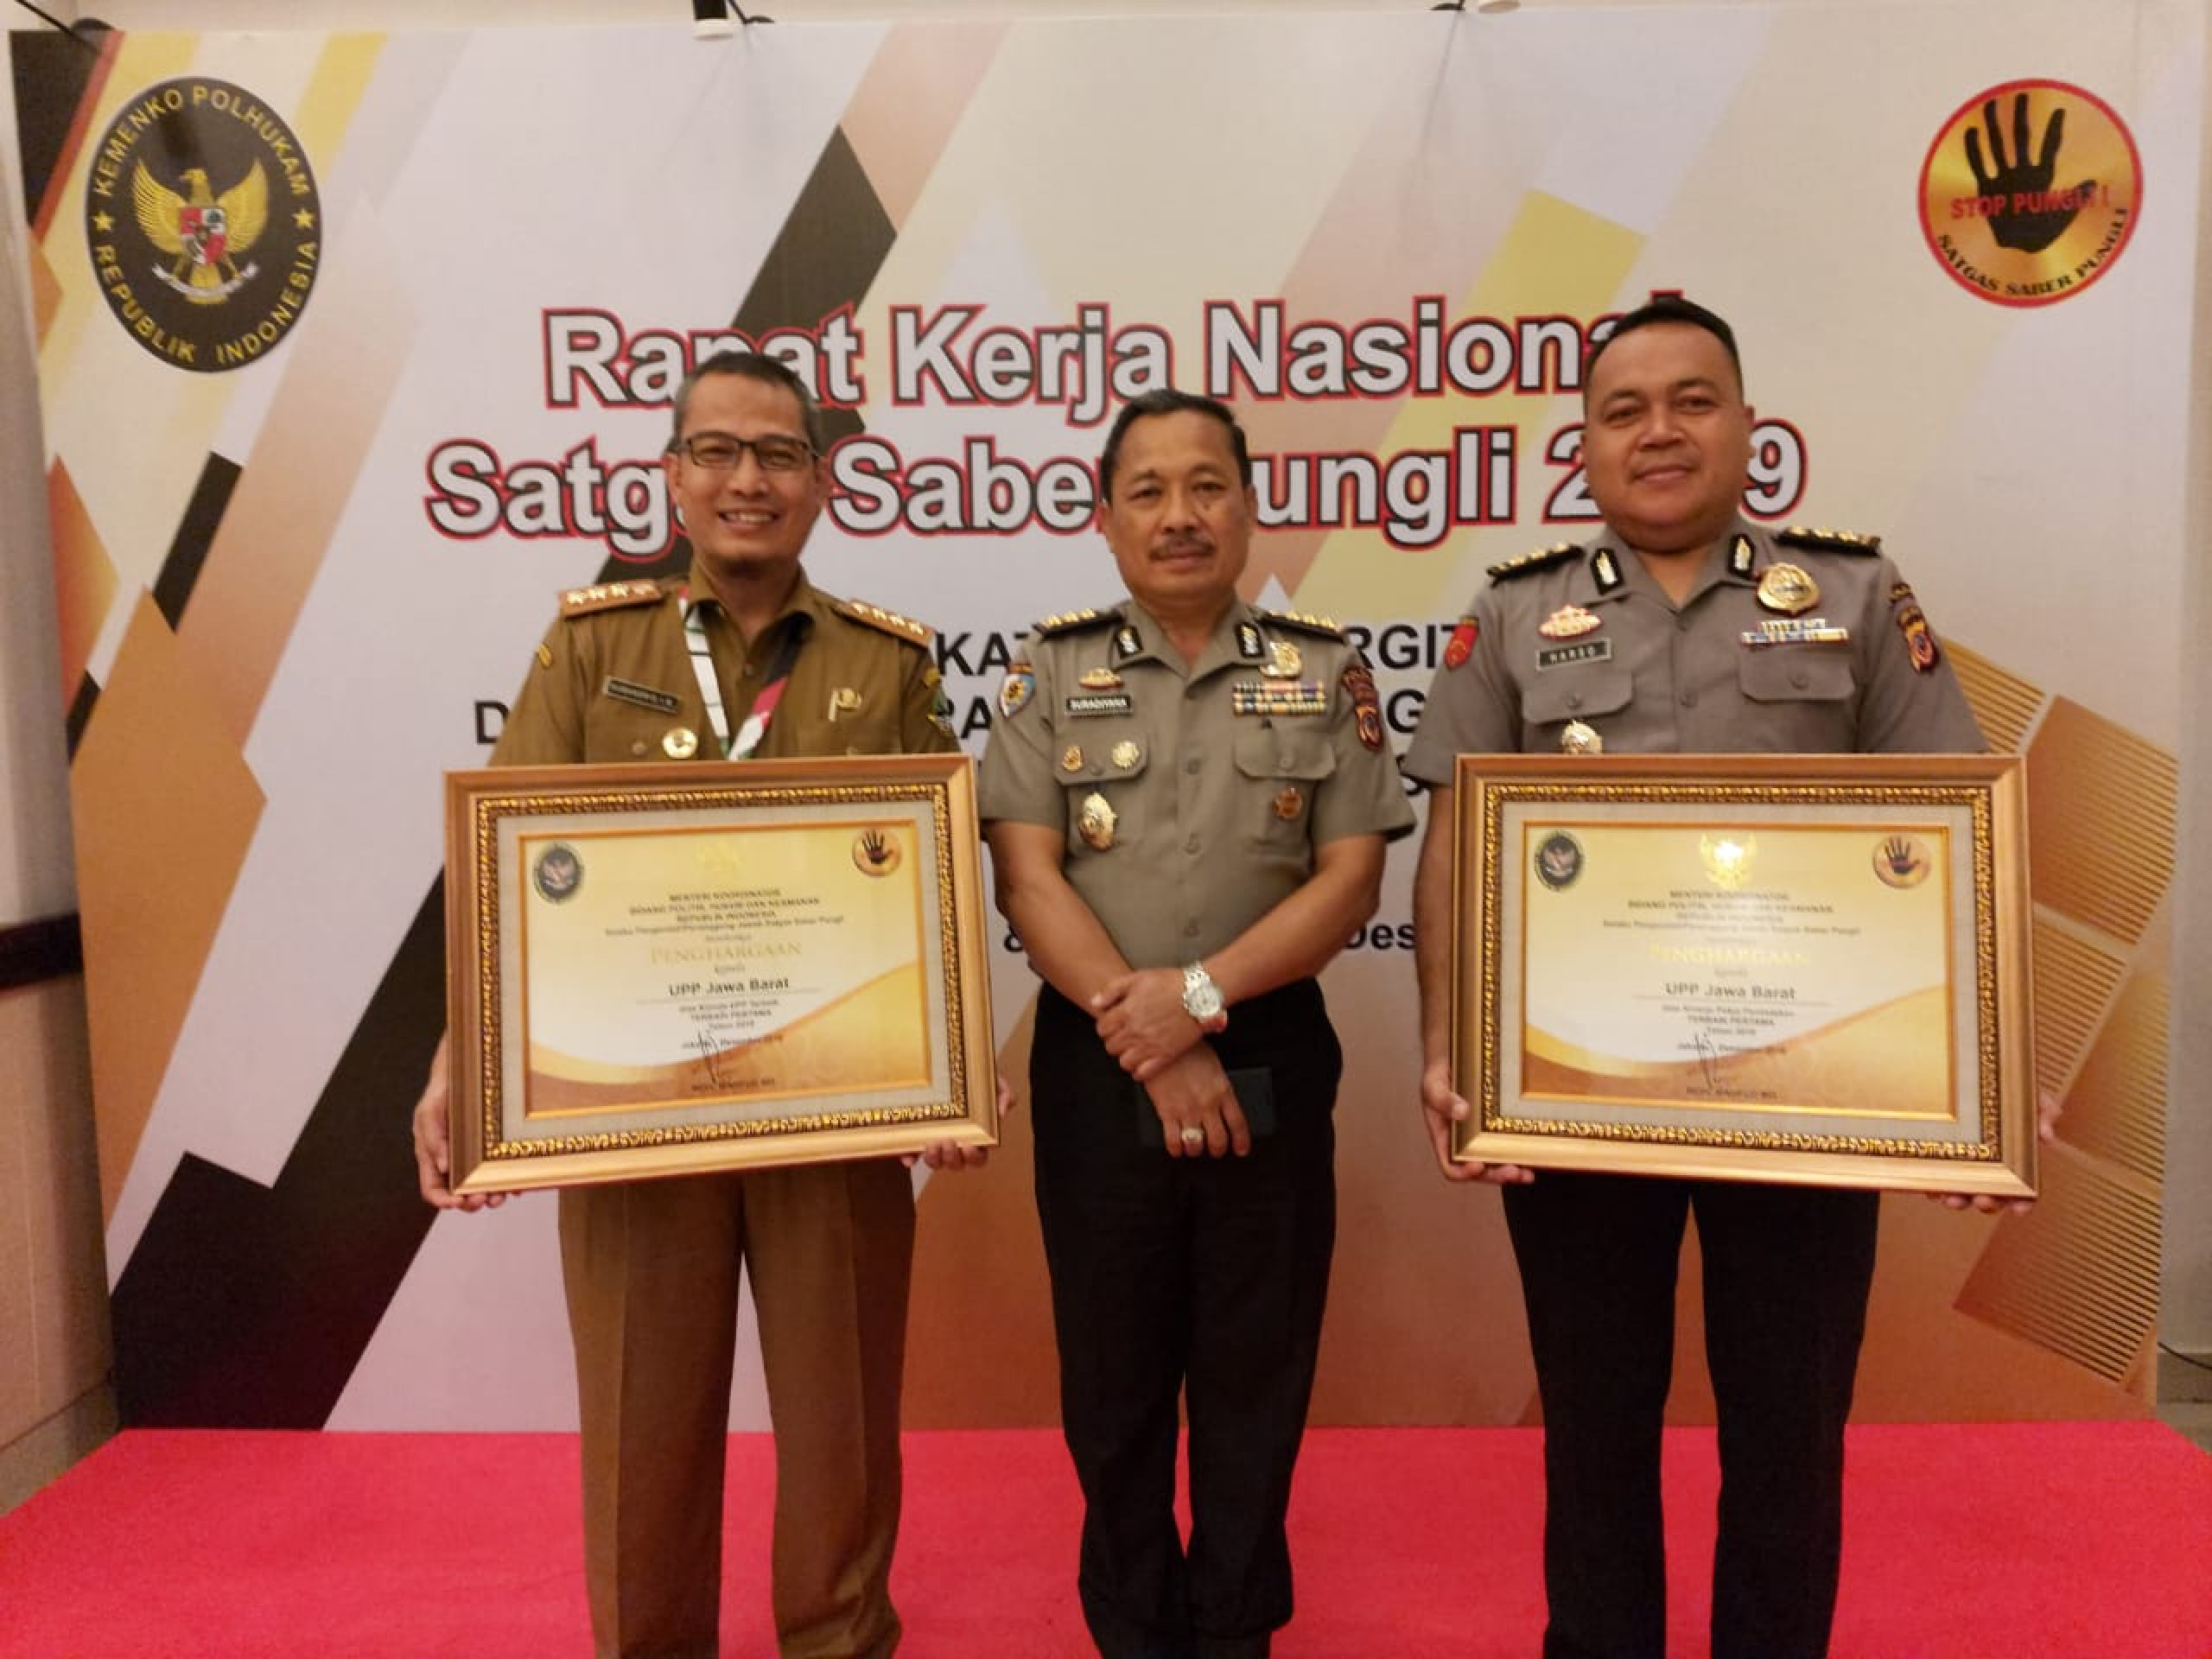 saberpungli jabar - Unit Pemberantasan Pungutan (UPP) Jawa Barat Raih 2 Penghargaan